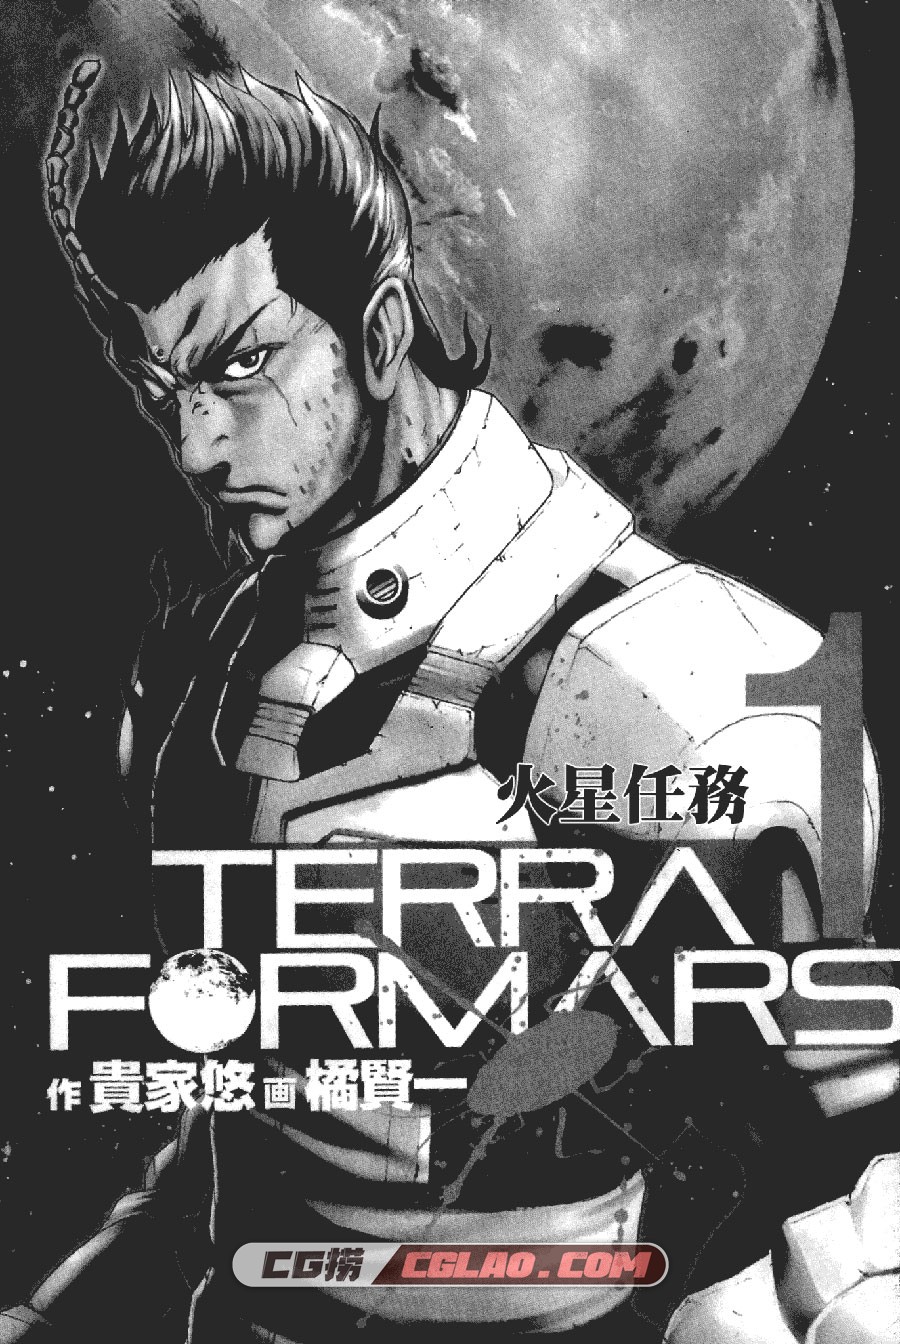 火星任务 橘贤一 1-11卷 科学热血漫画全集完结下载 百度网盘,TerraForMars01_001.jpg